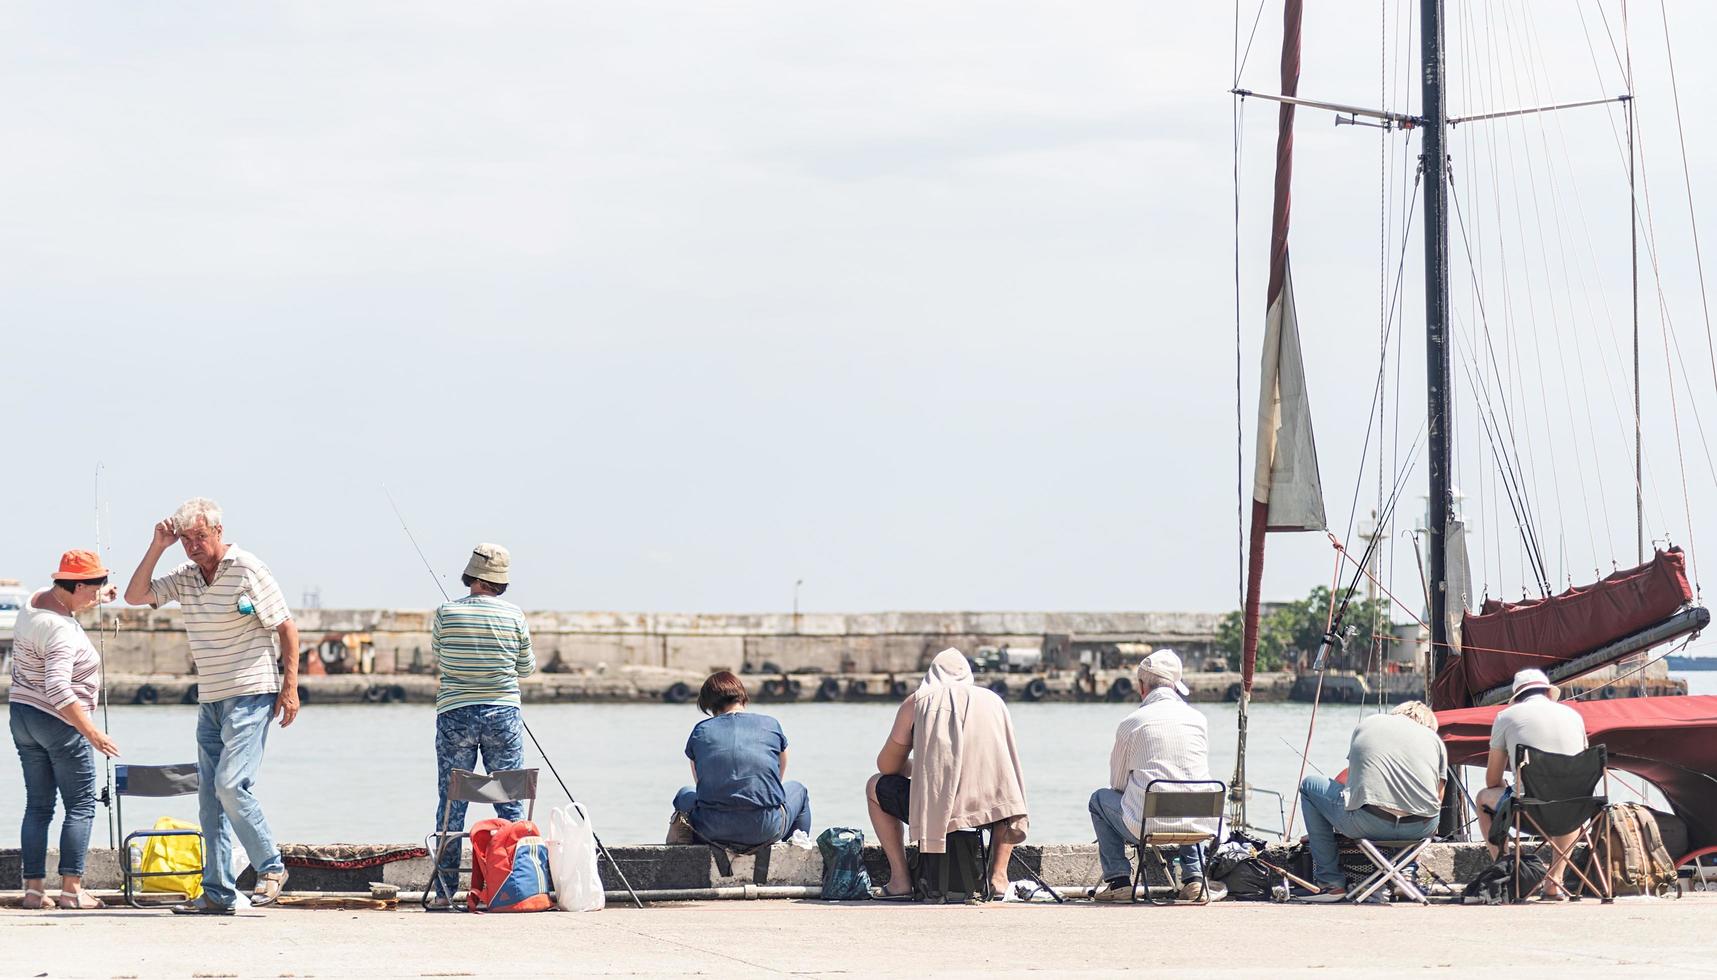 Jalta 2021 - Leute, die auf der Böschung fischen, Boote und Yachten im Hintergrund foto